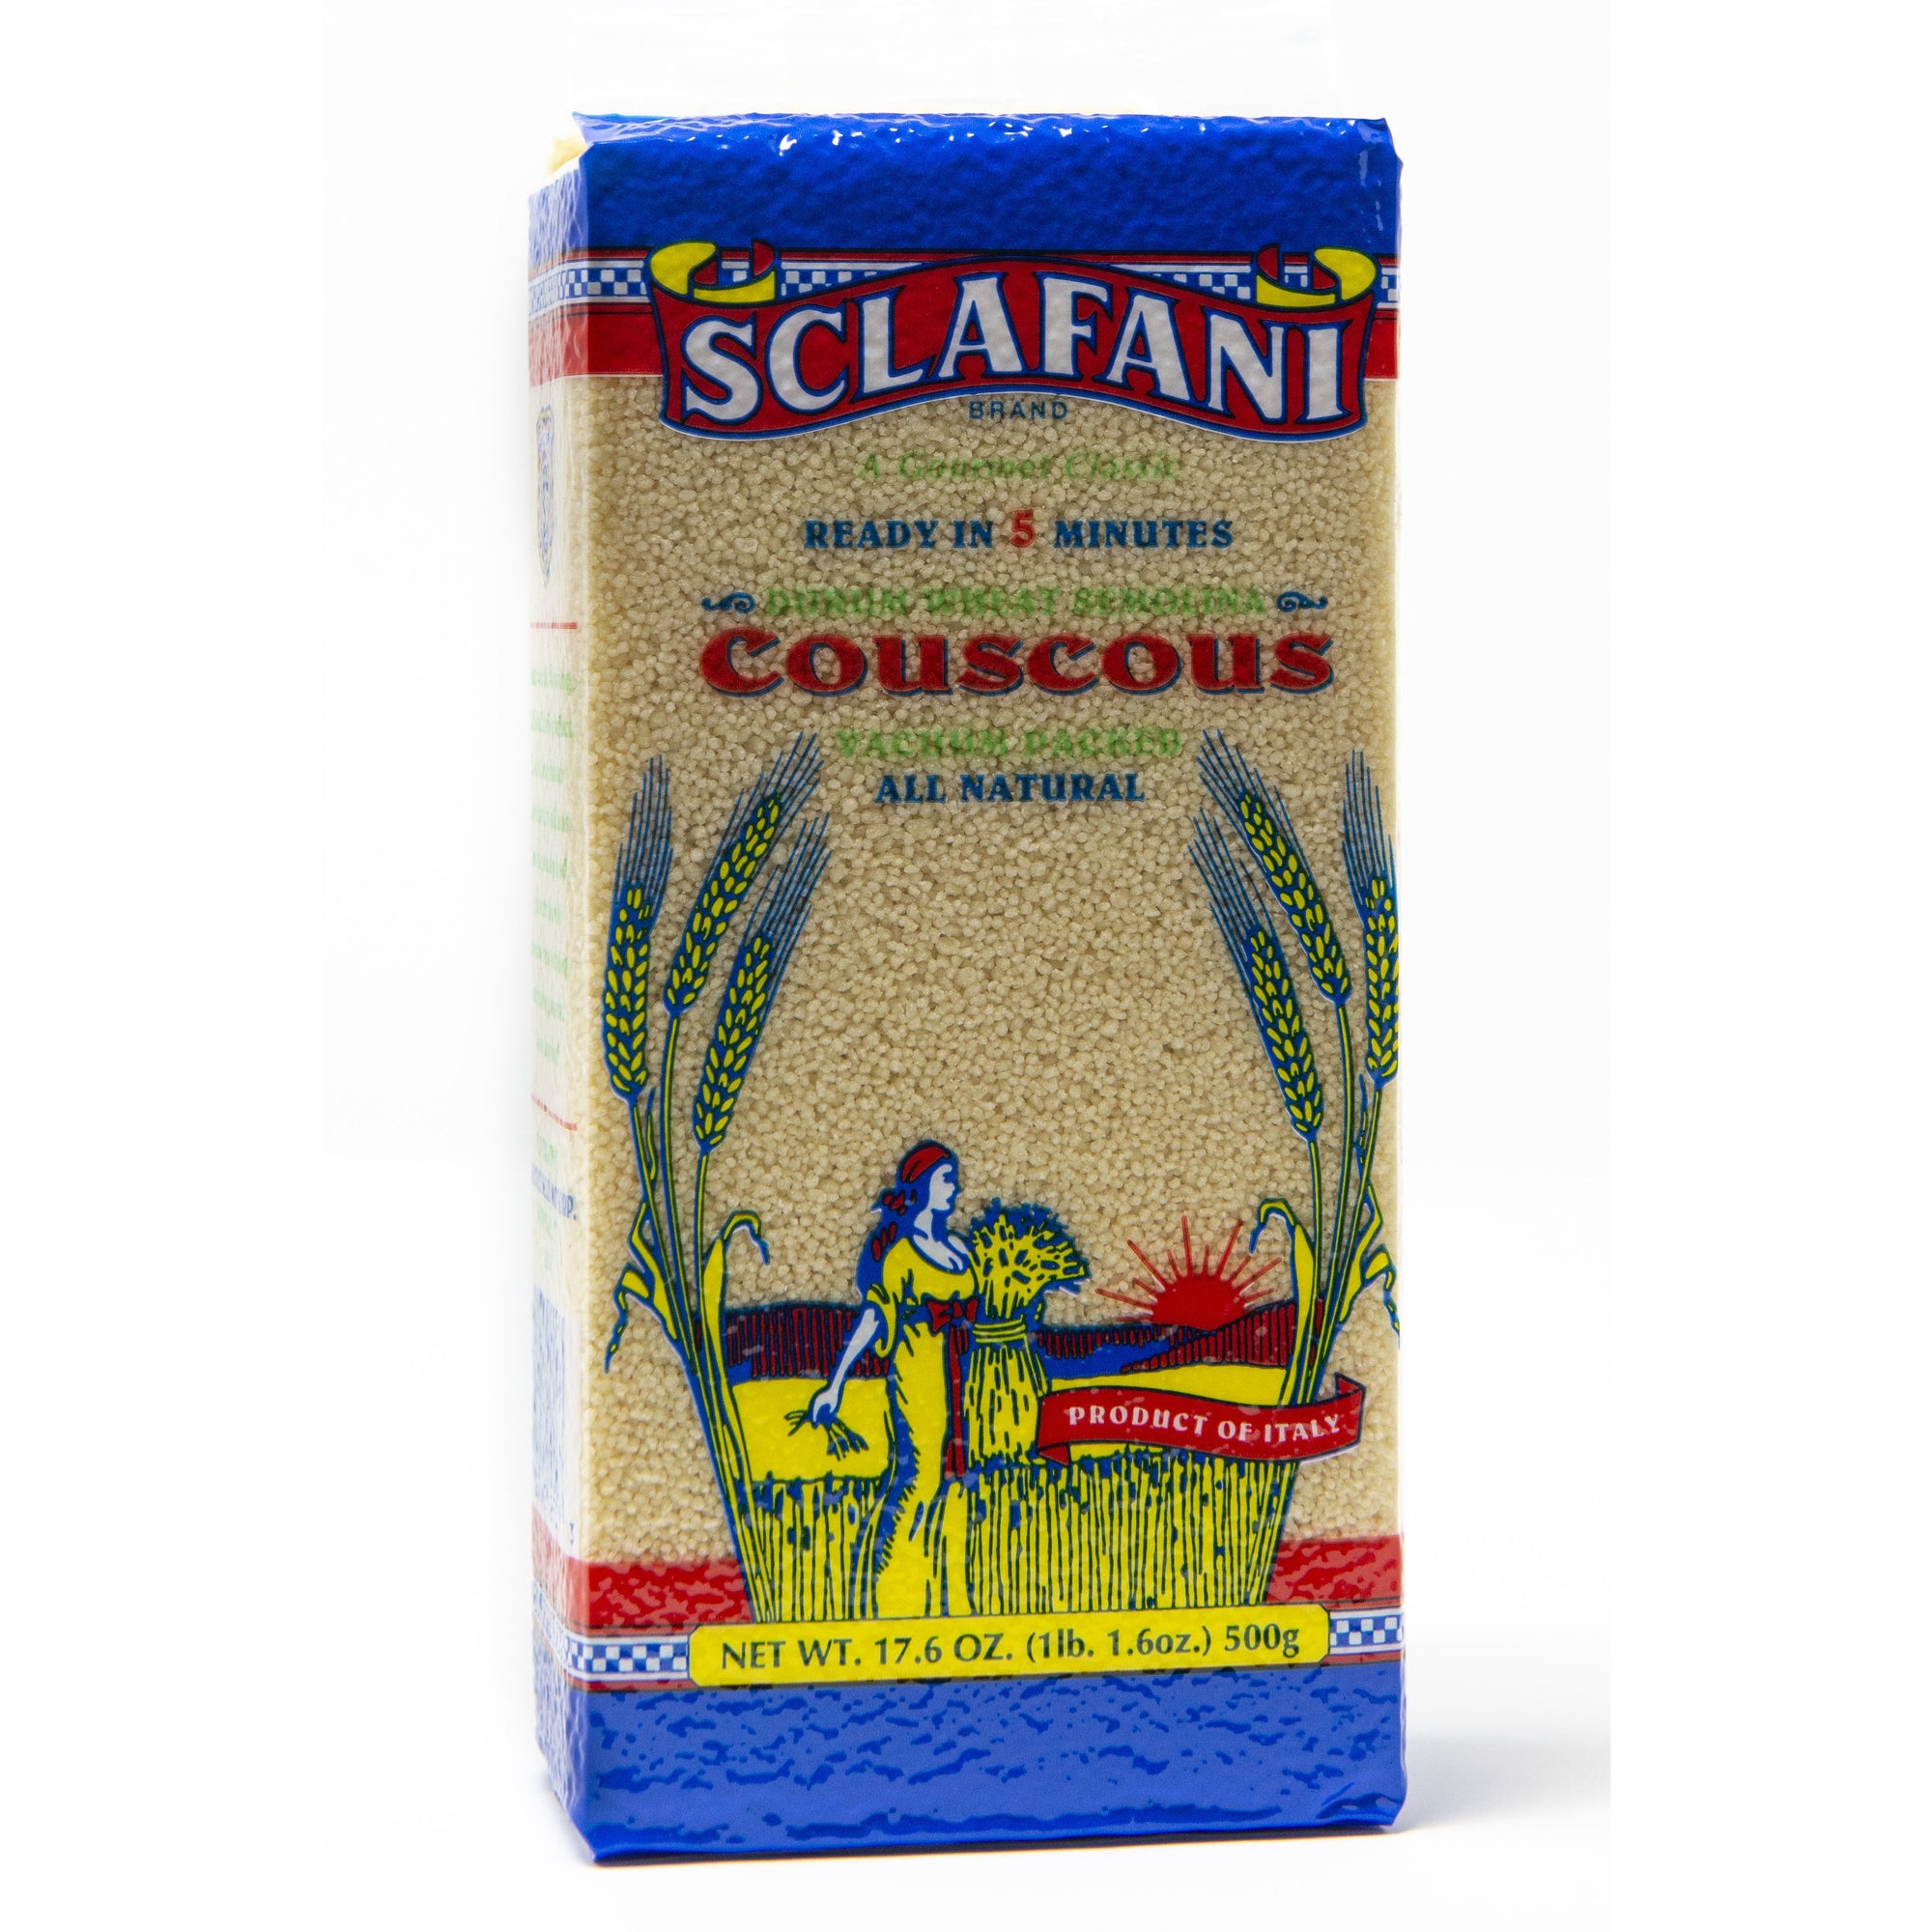 Sclafani Cous Cous 17.6 oz. Package